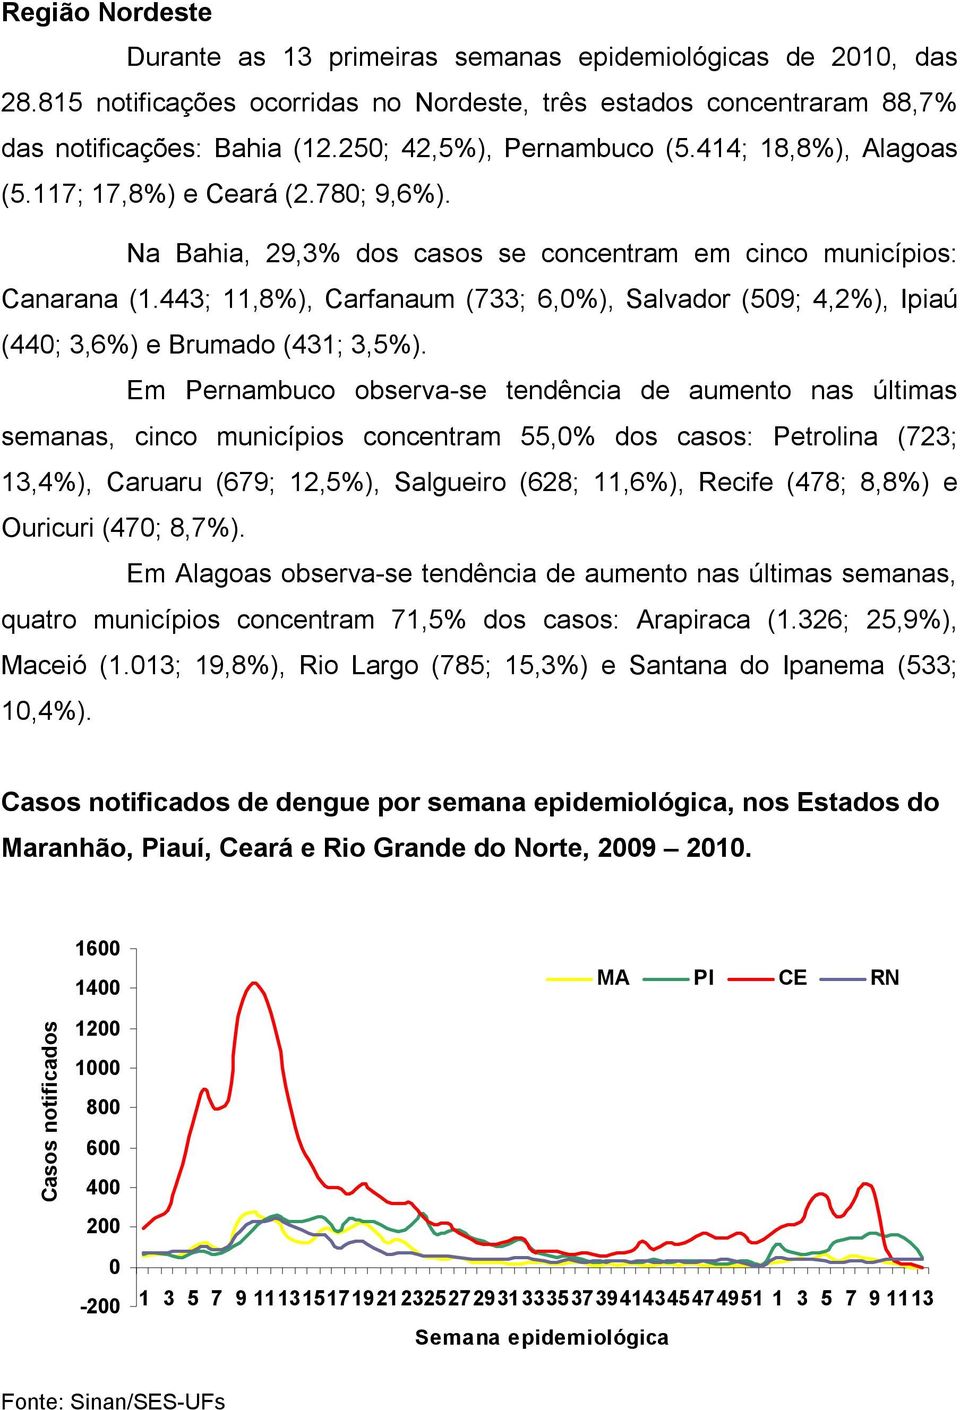 443; 11,8%), Carfanaum (733; 6,%), Salvador (59; 4,2%), Ipiaú (44; 3,6%) e Brumado (431; 3,5%).